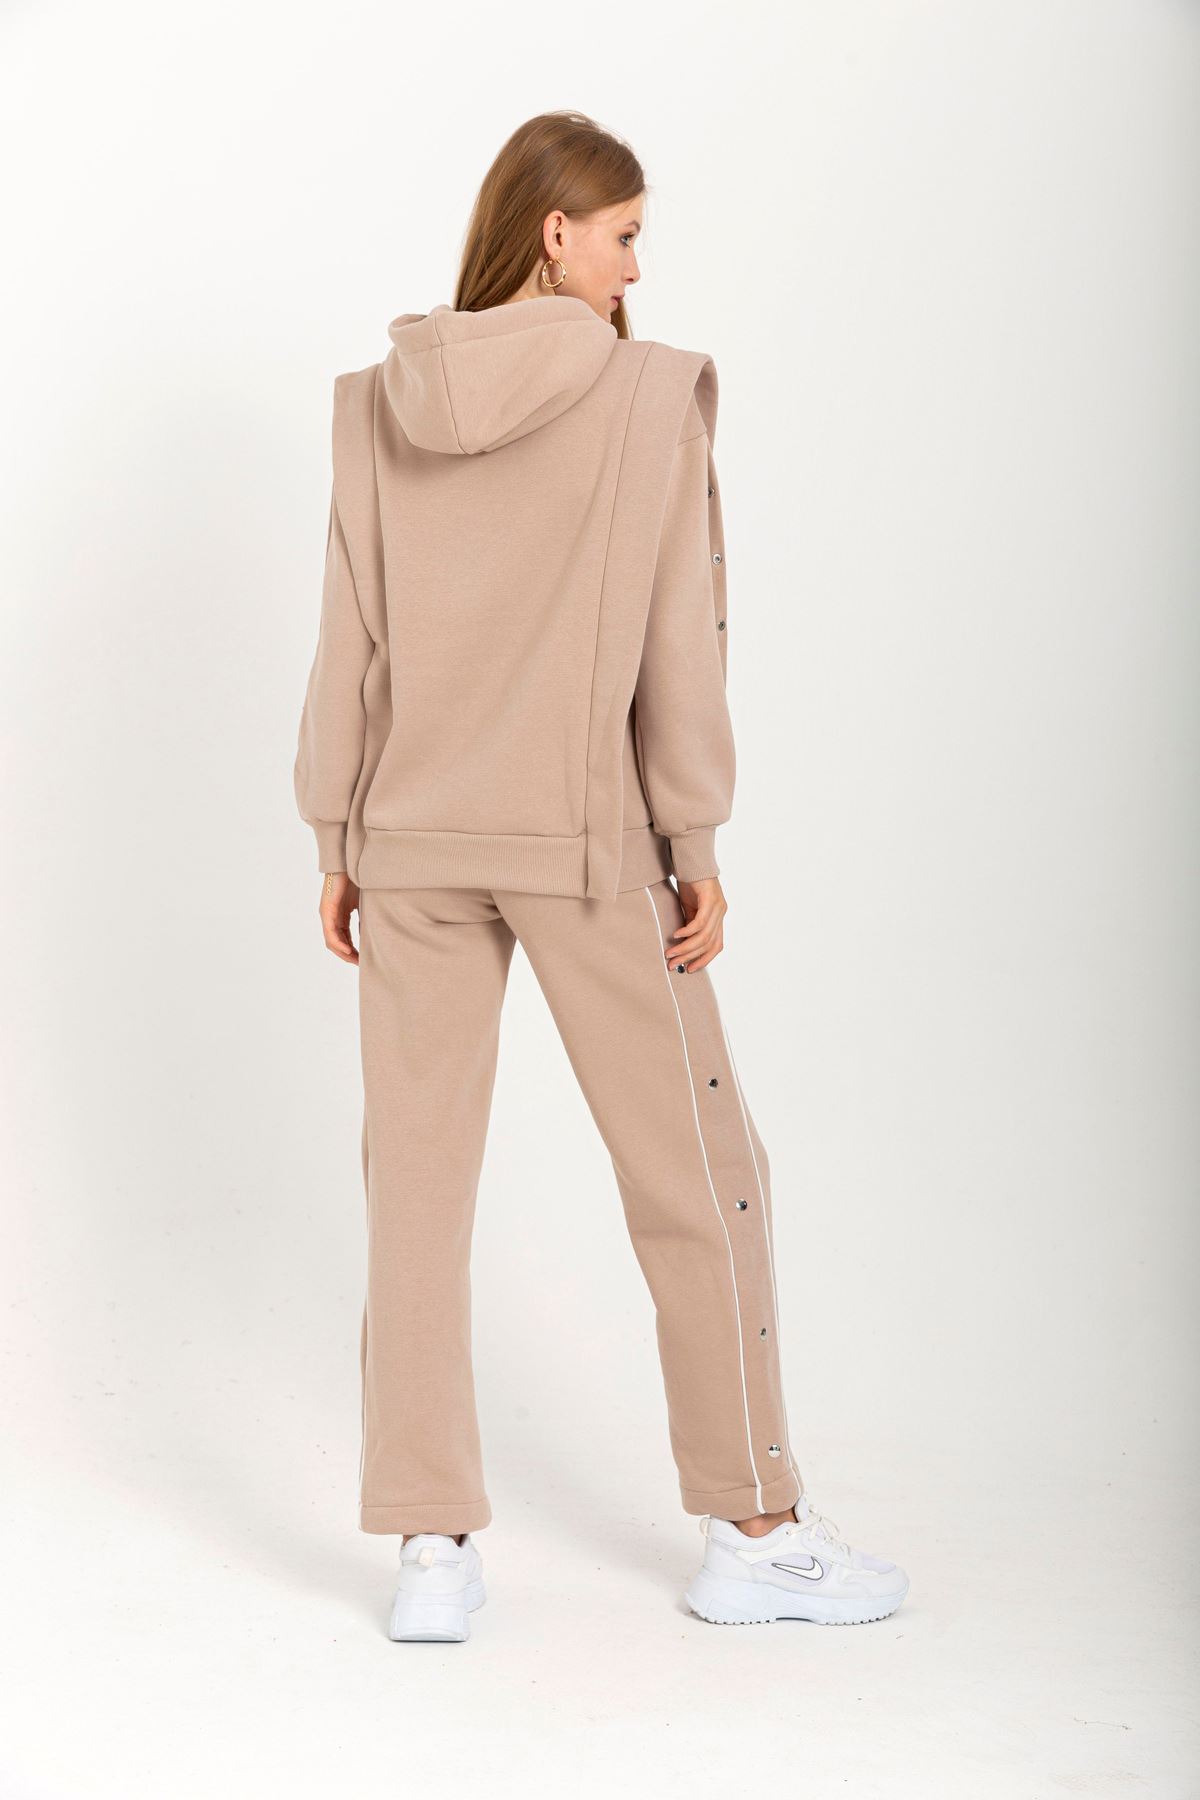 Thread Knit FabricLong Sleeve Hooded Hip Height Oversize Women'S Set 2 Pieces - Chanterelle 